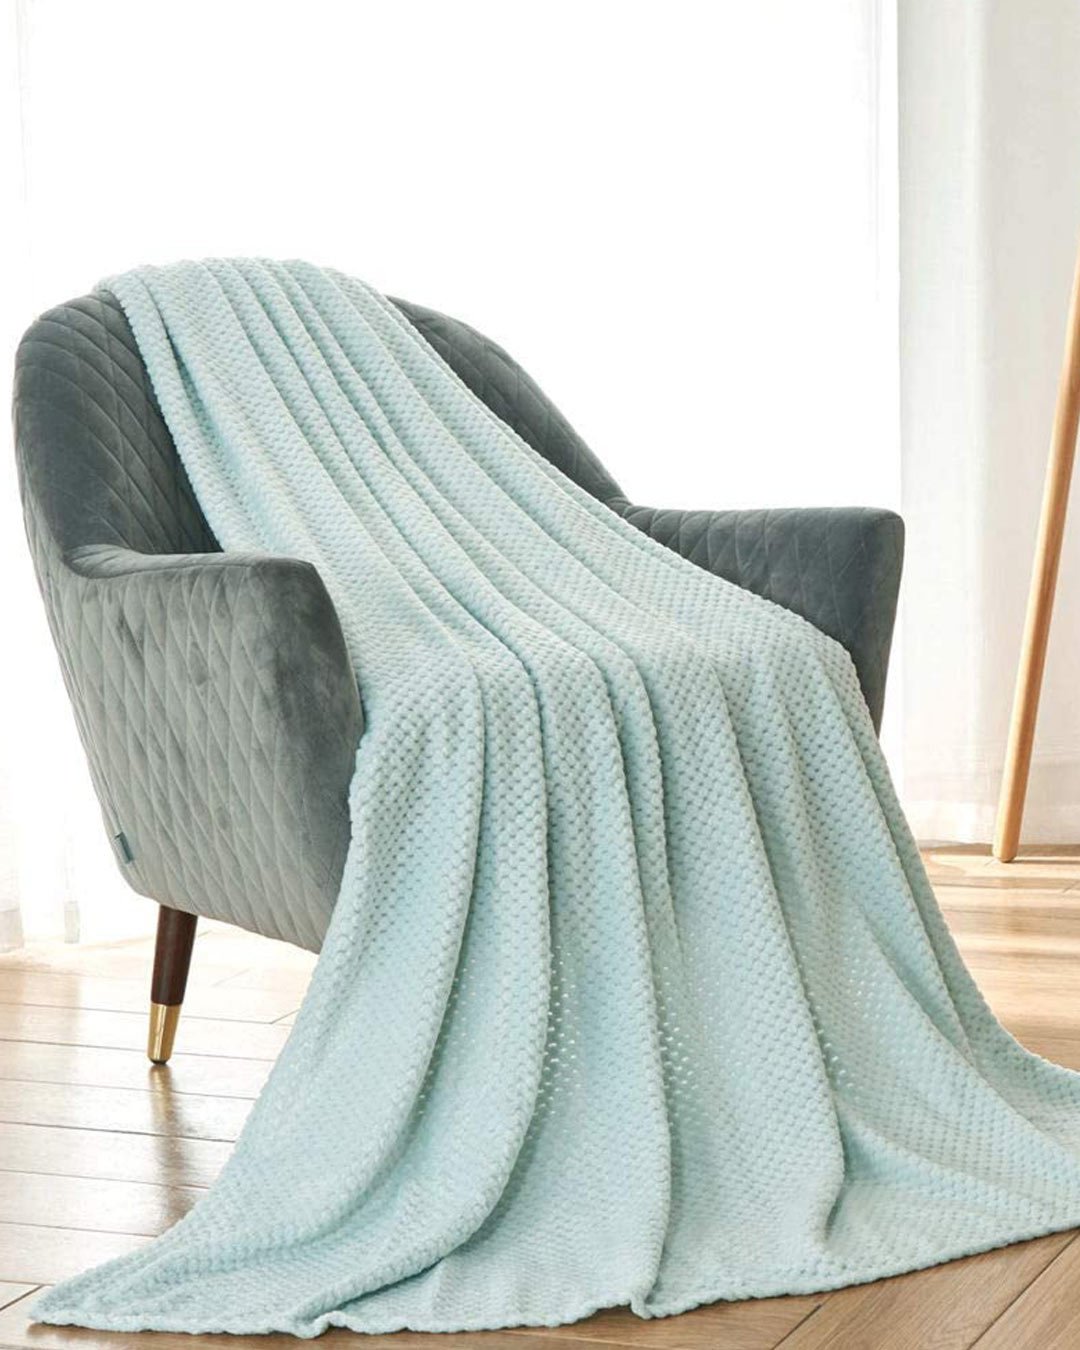 wedding-registry deas blanket chair